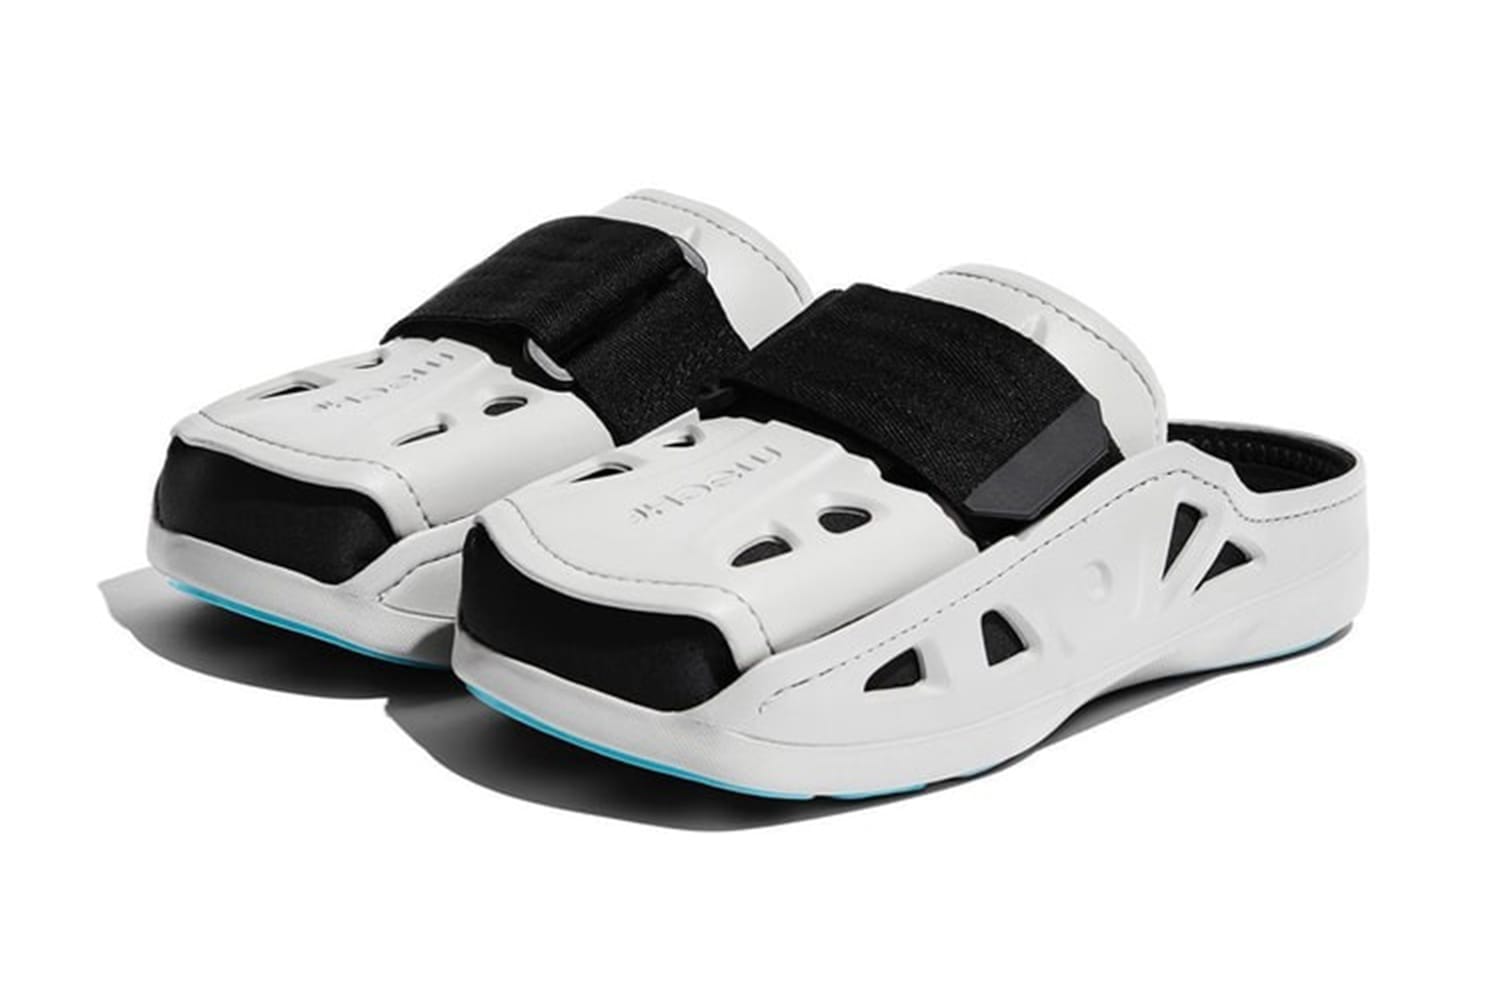 MSCHF 推出医疗护具变体鞋款「AC2 Mule」